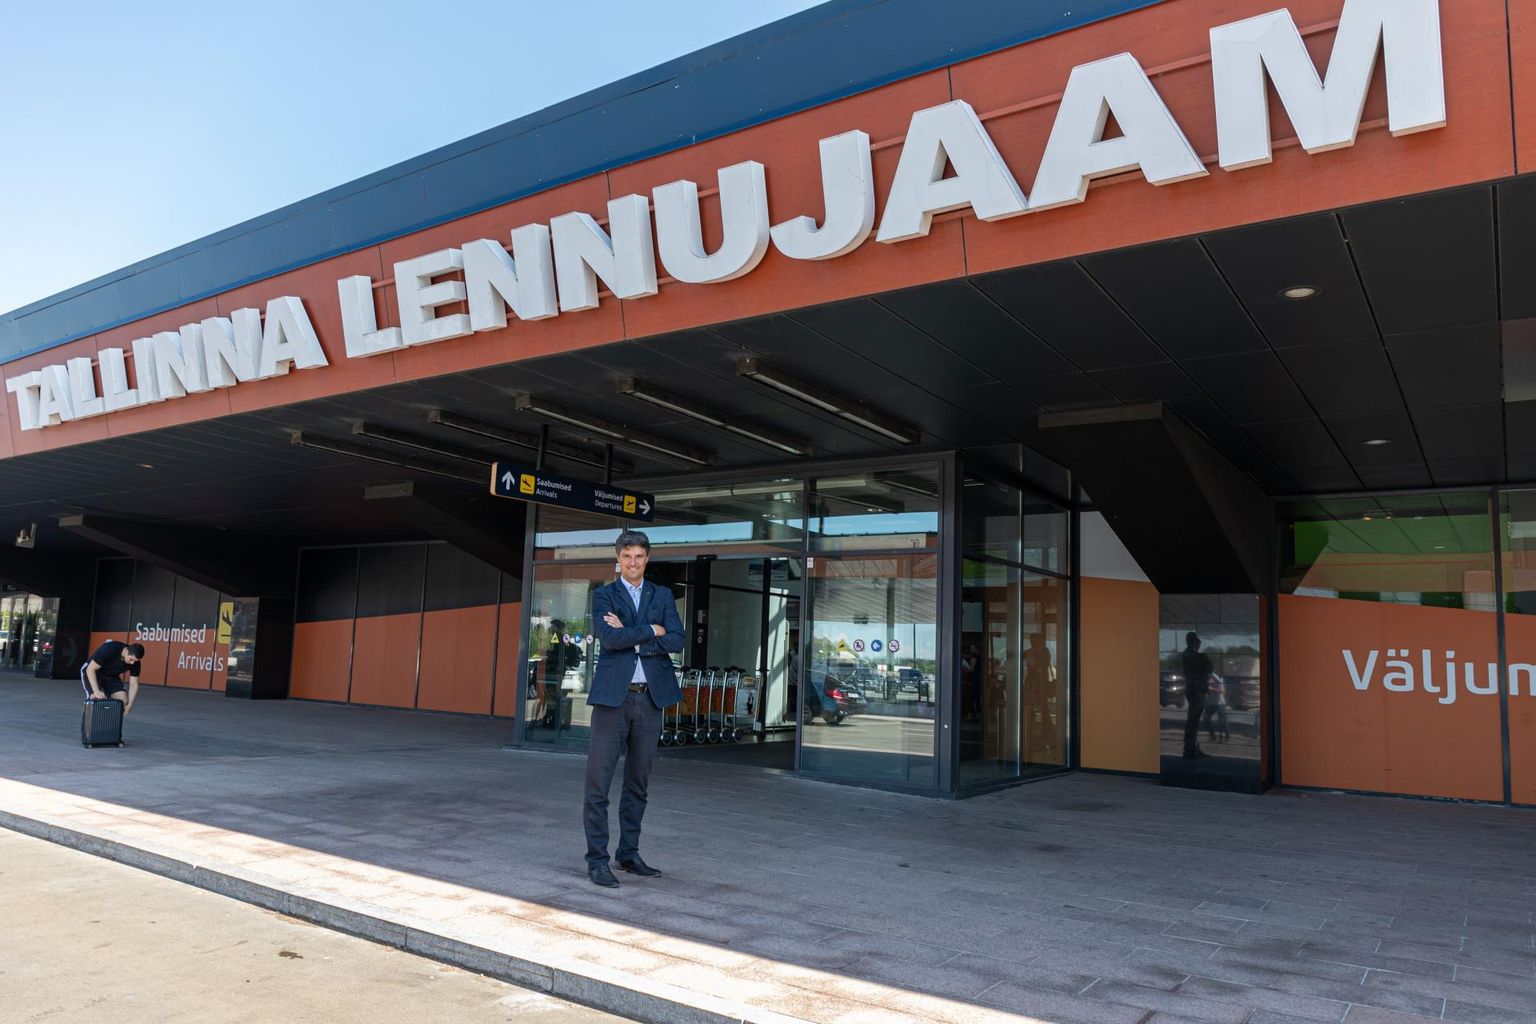 Tallinna lennujaama juhatuse esimees Riivo Tuvike sõnas, et palju oleneb riiklikest normidest – kui lennukis tuleb inimesi eraldada, siis hakkavad piletid olema kallid.